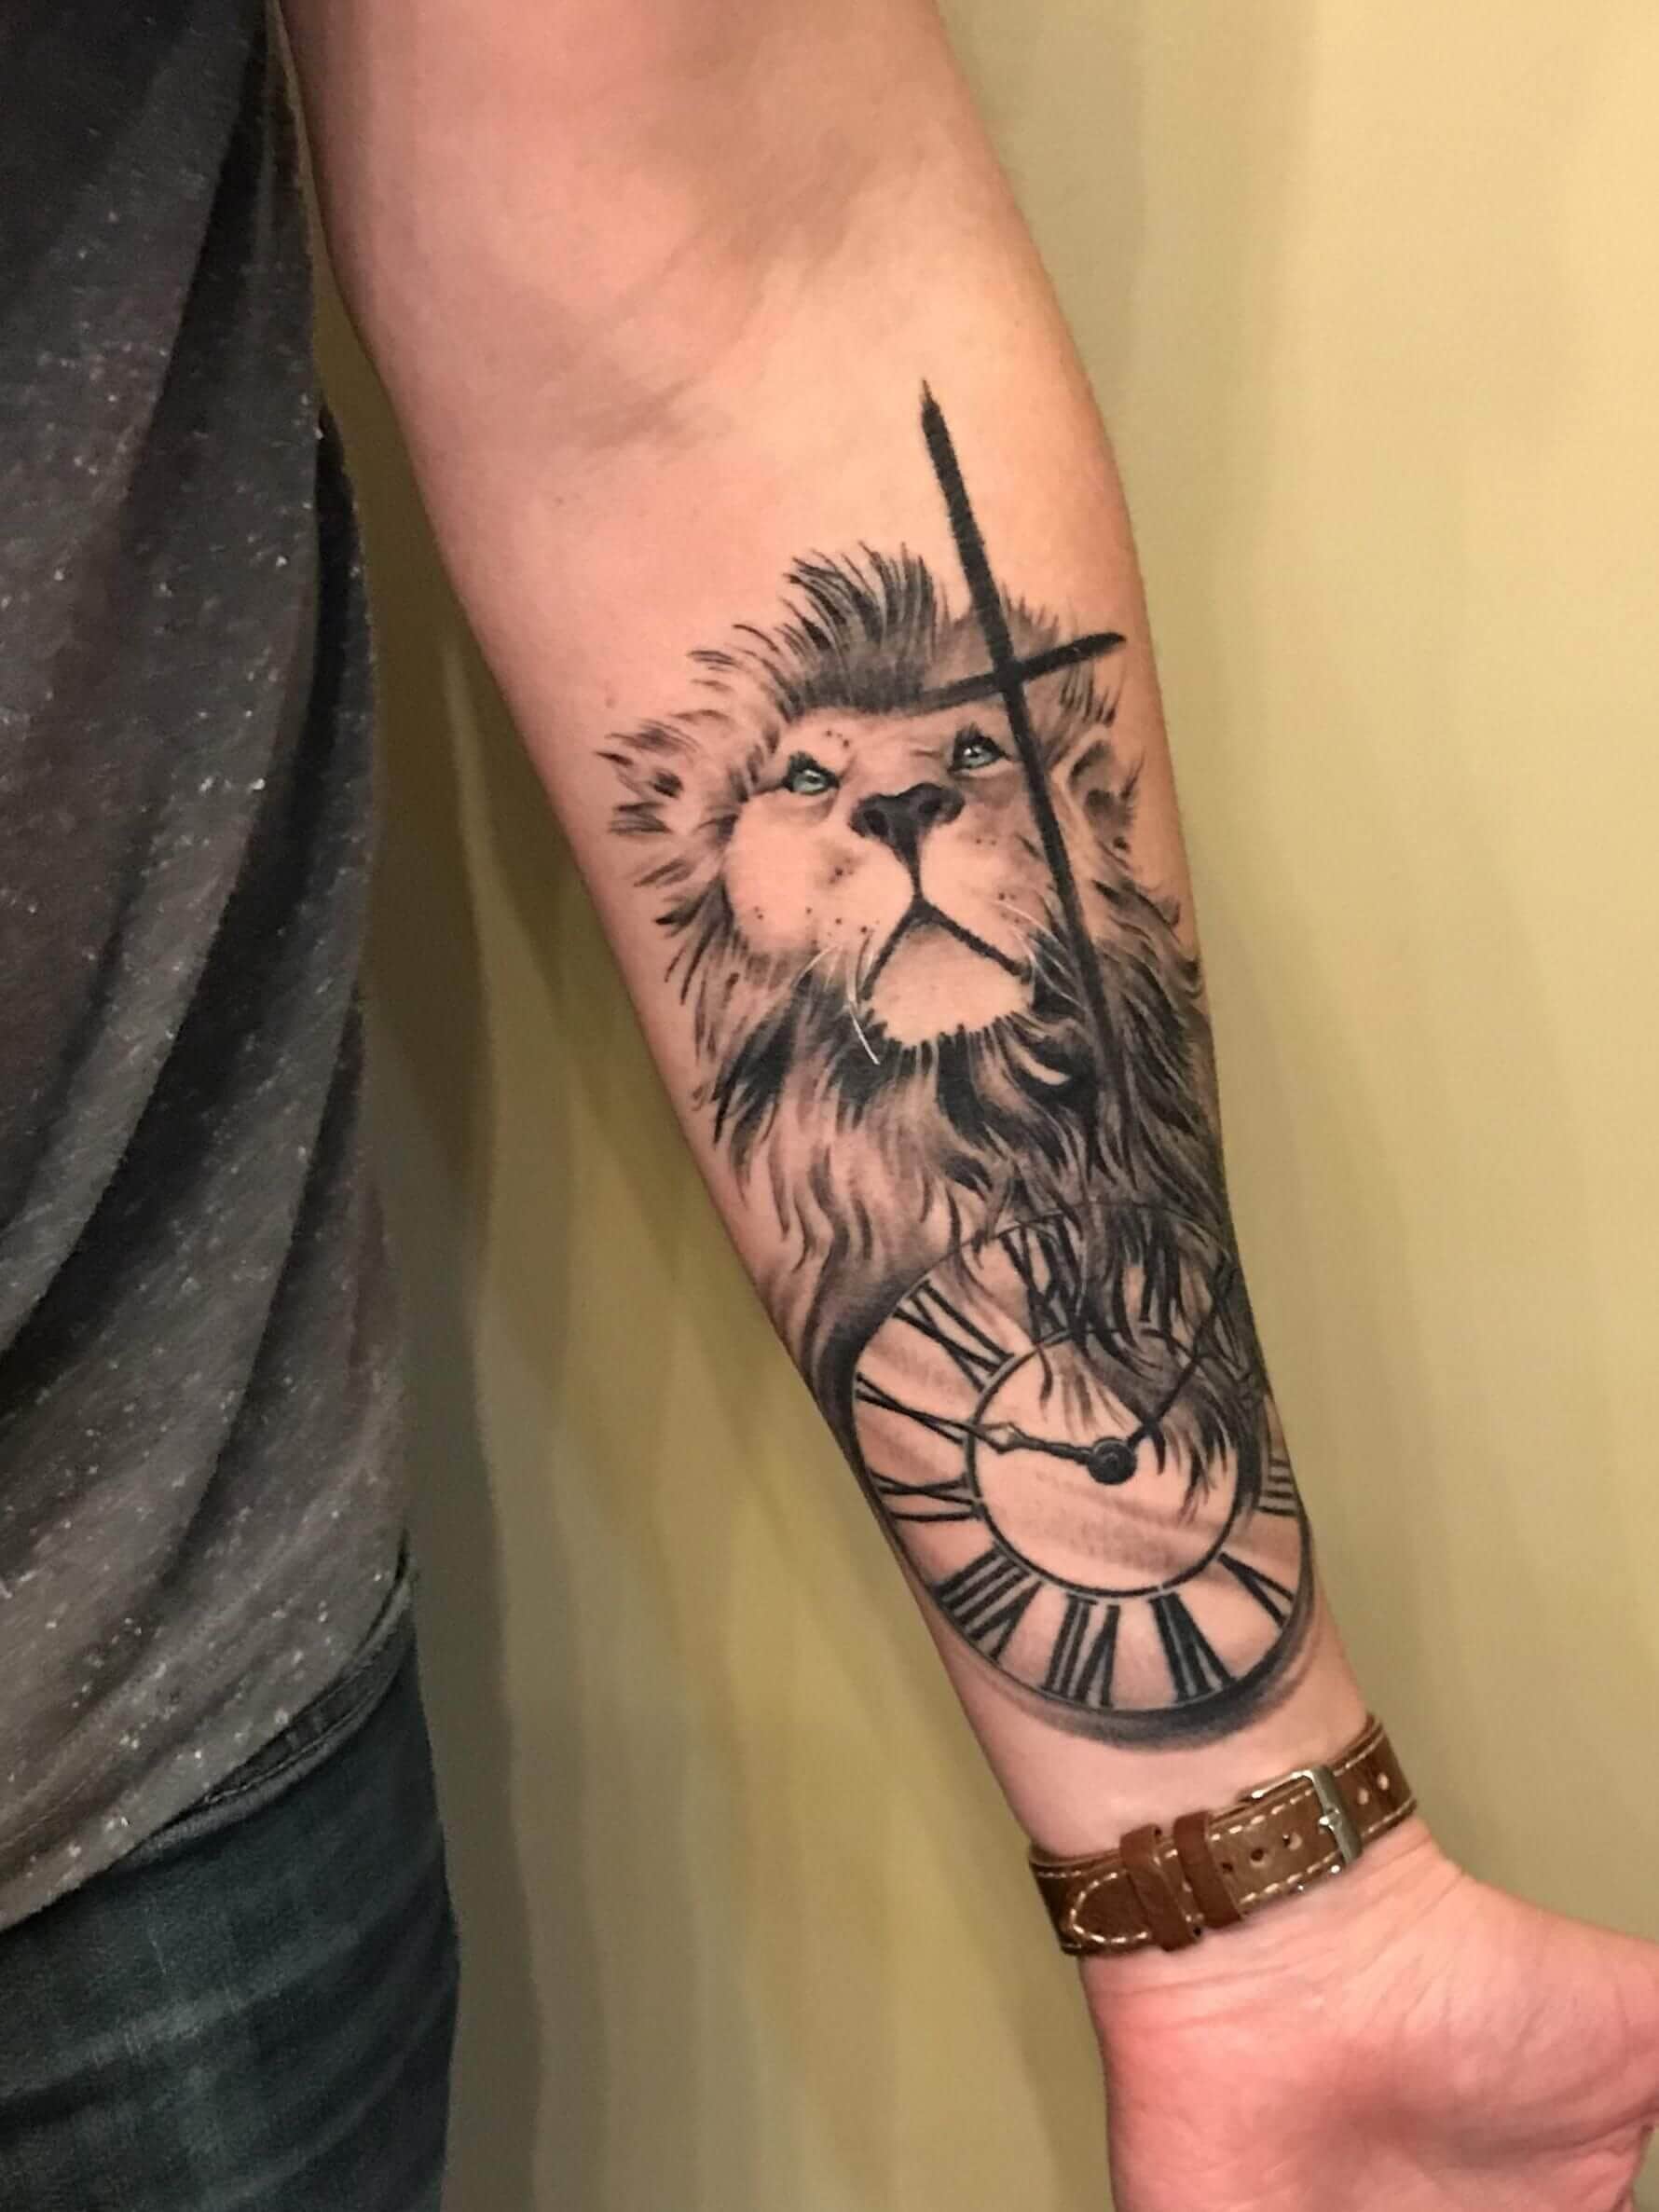 125 Lion Tattoo Ideas That Will Make You Roar - Wild Tattoo Art